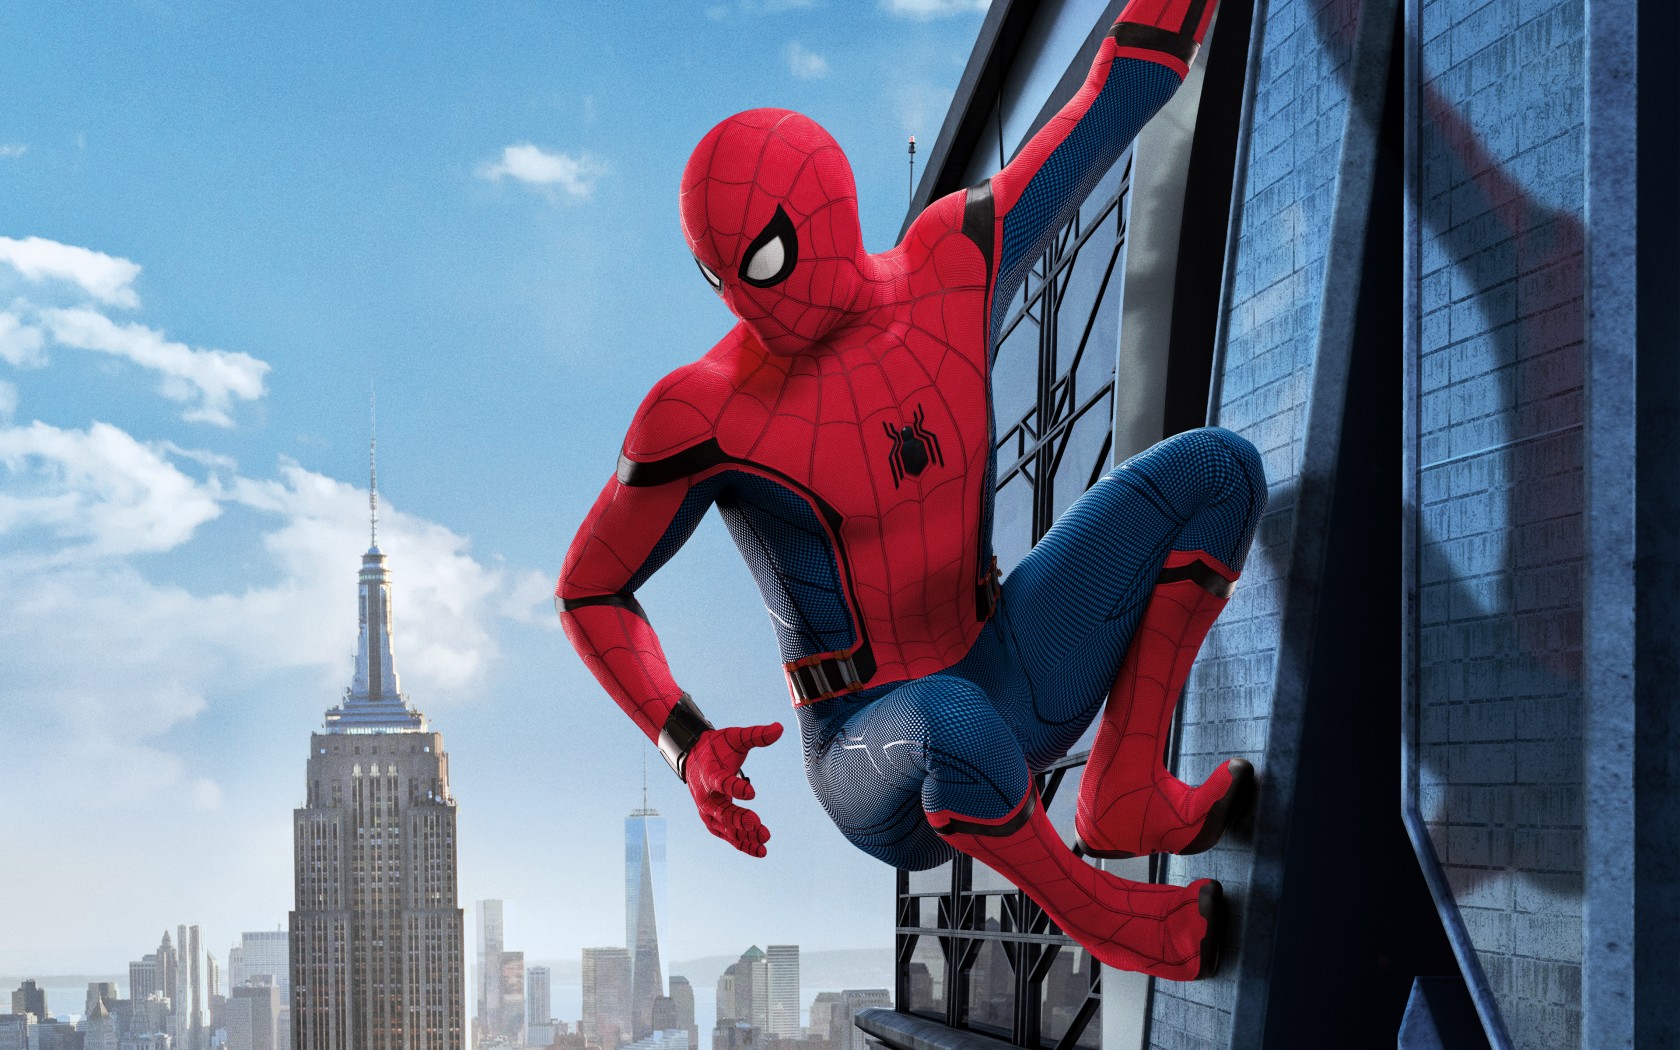 fond d'écran spiderman homecoming hd,homme araignée,super héros,personnage fictif